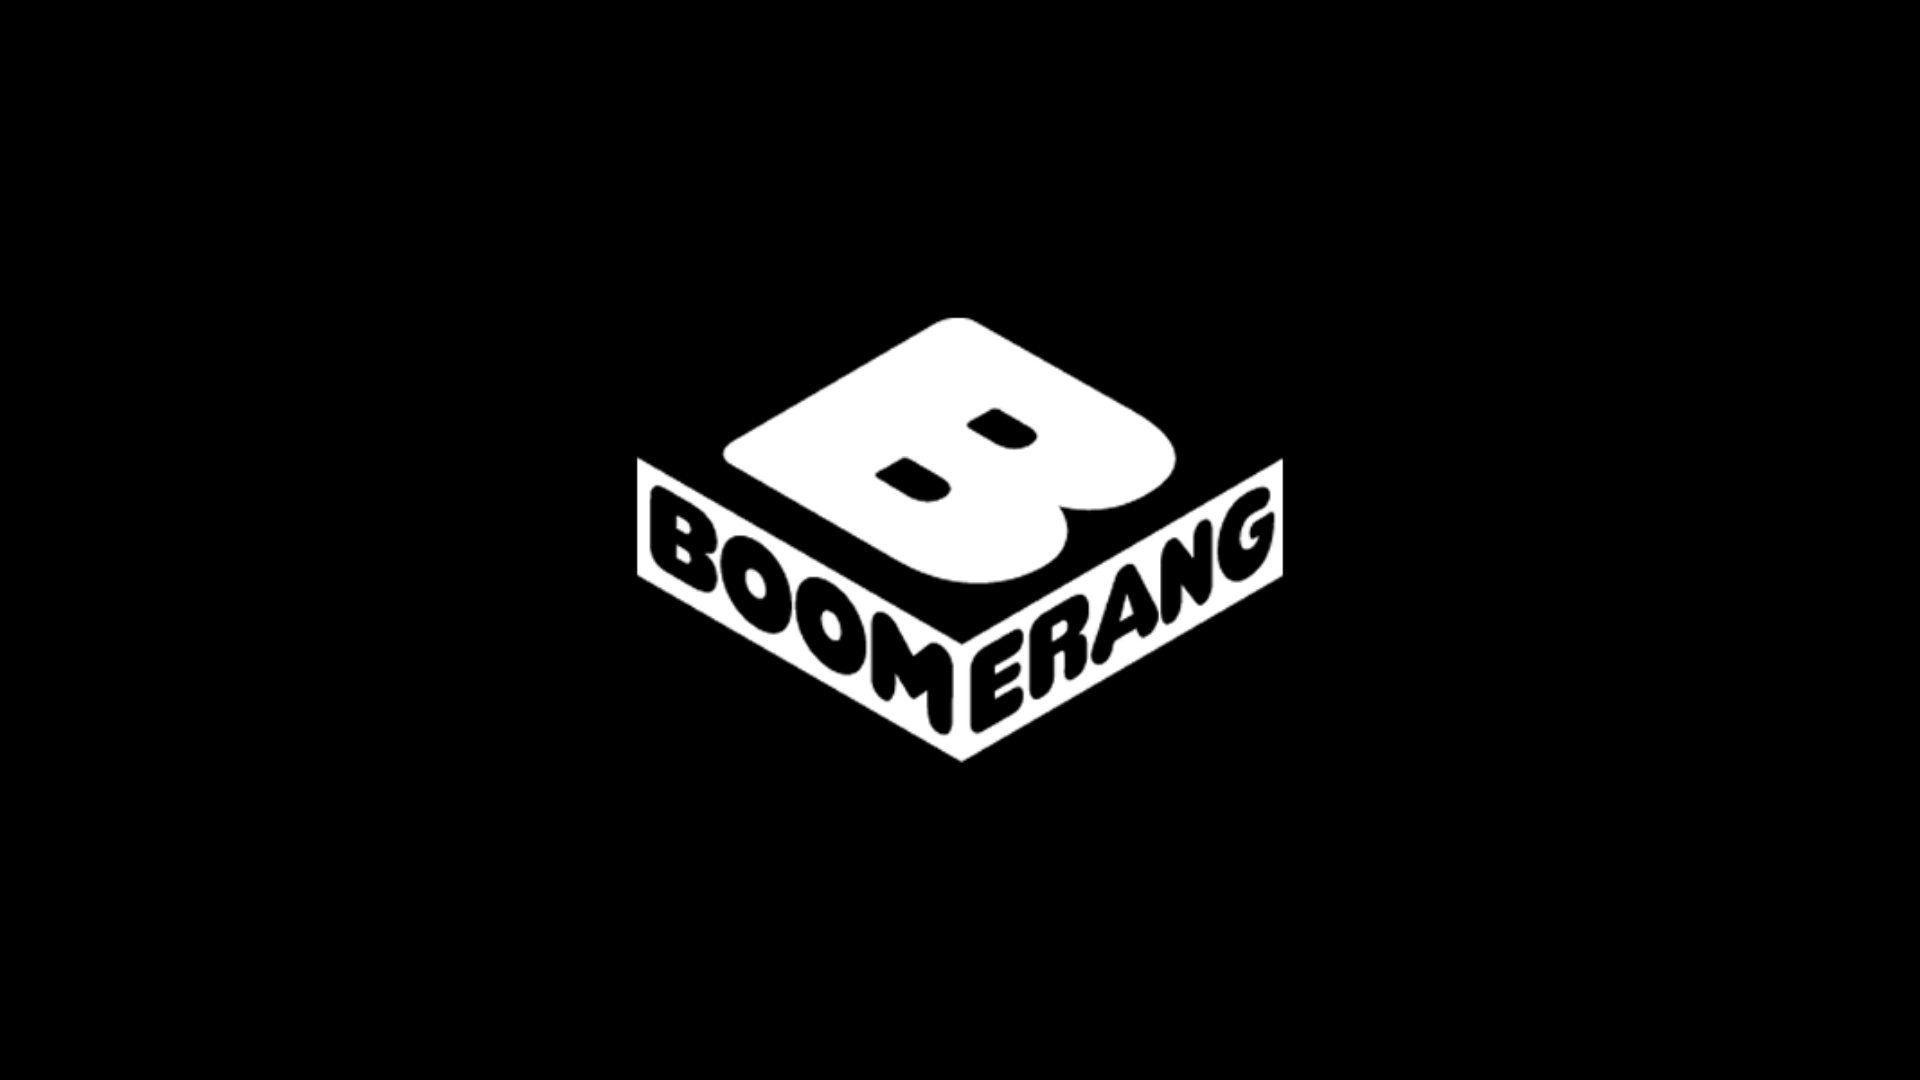 Boomerang ao vivo,Boomerang online,assistir Boomerang,assistir Boomerang ao vivo,assistir Boomerang online,Boomerang gratis,assistir Boomerang gratis,ao vivo online,ao vivo gratis,ver Boomerang,ver Boomerang ao vivo,ver Boomerang online,24 horas,24h,multicanais,piratetv,piratatvs.com